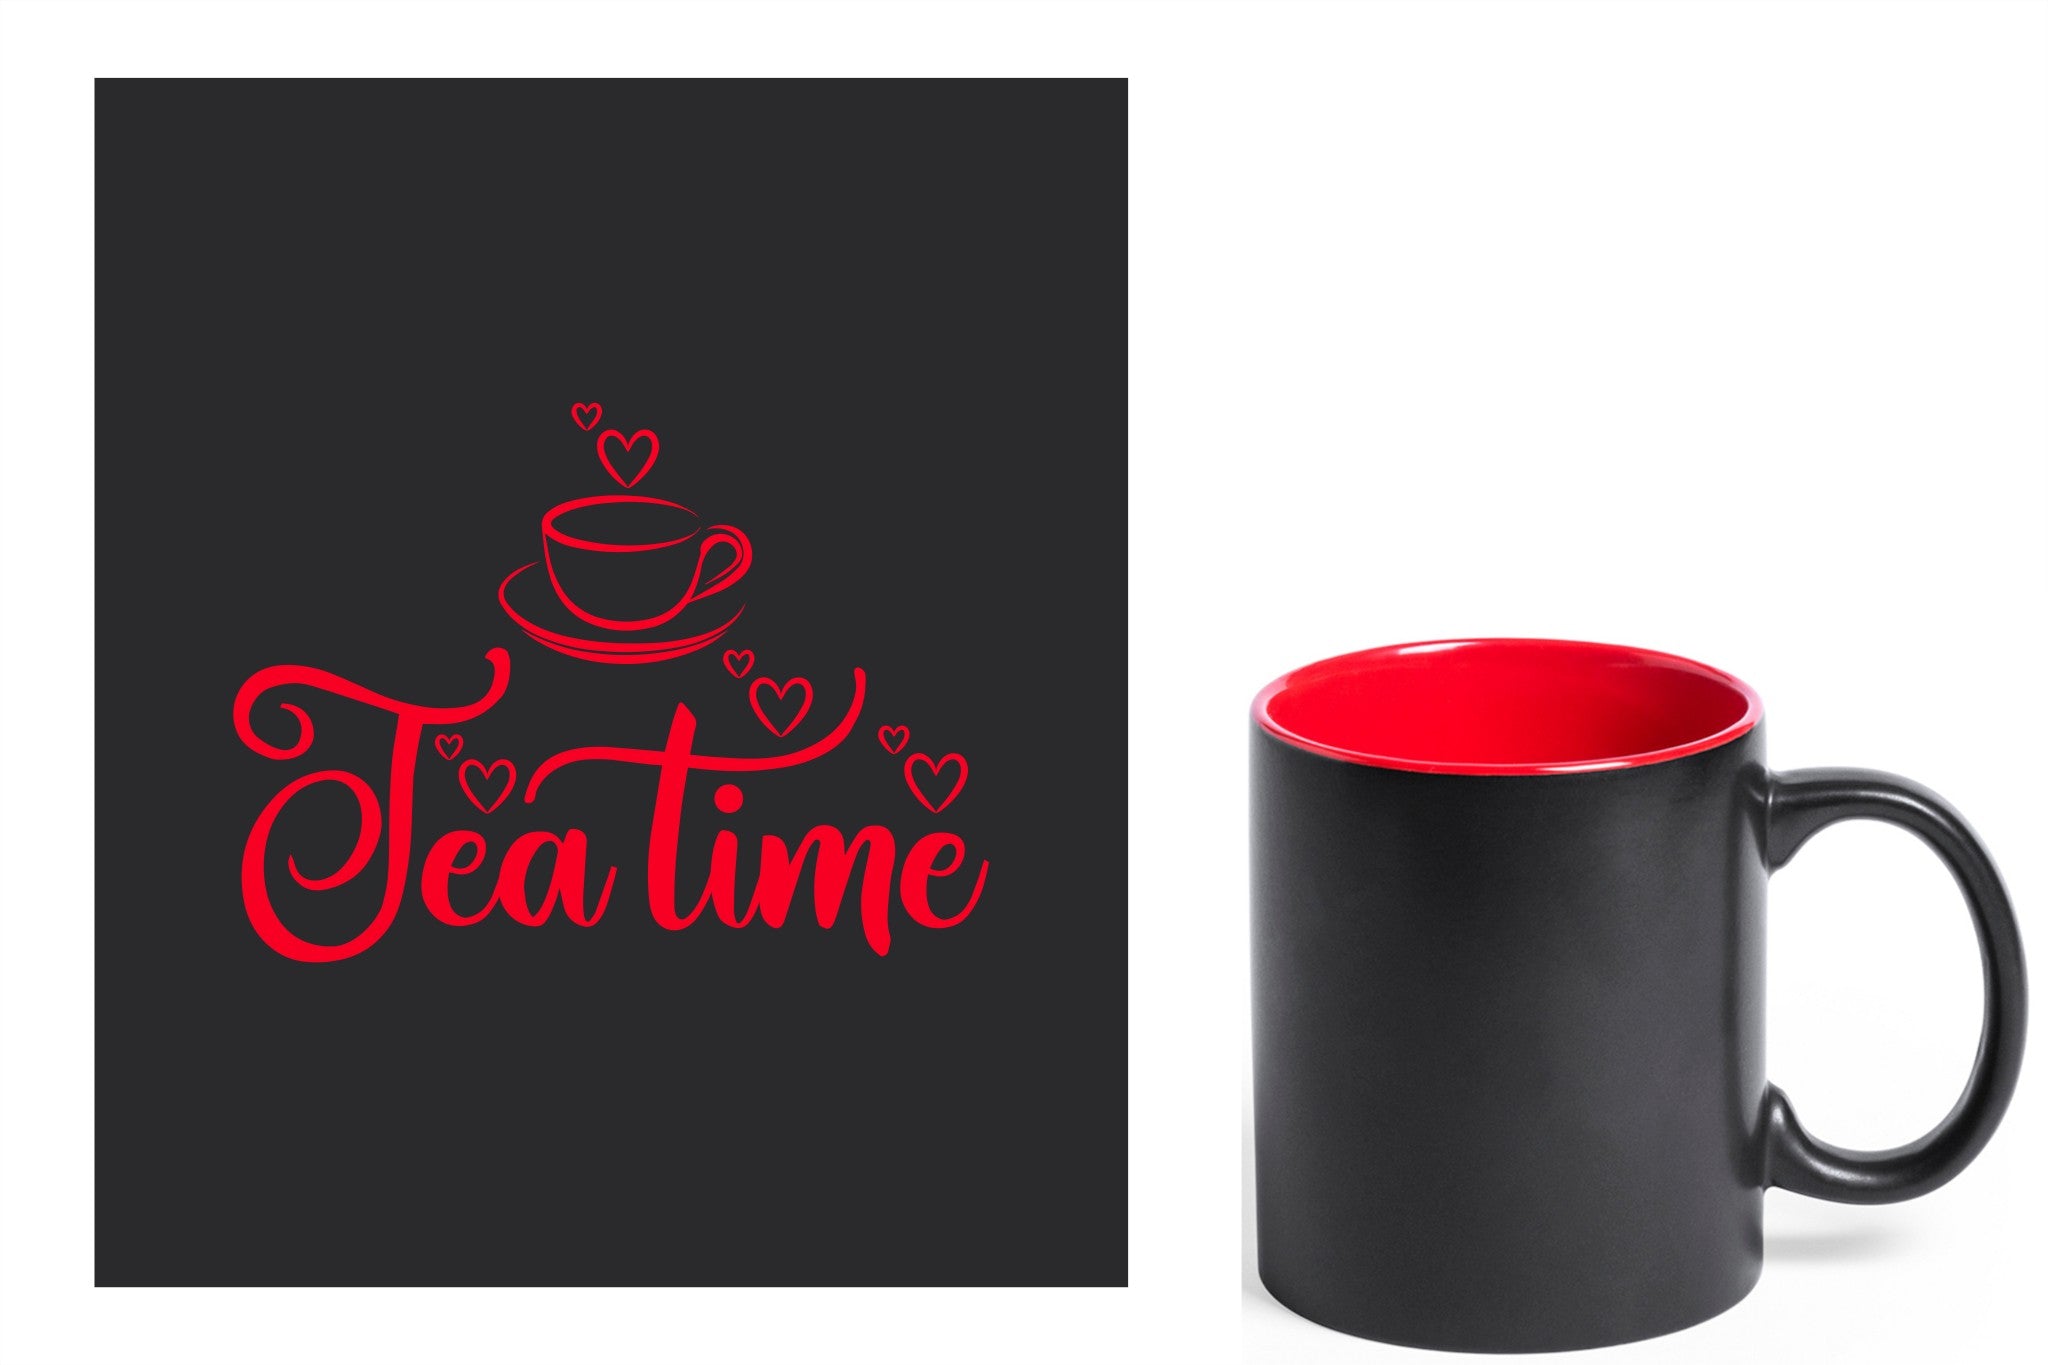 zwarte keramische mok met rode gravure  'tea time'.